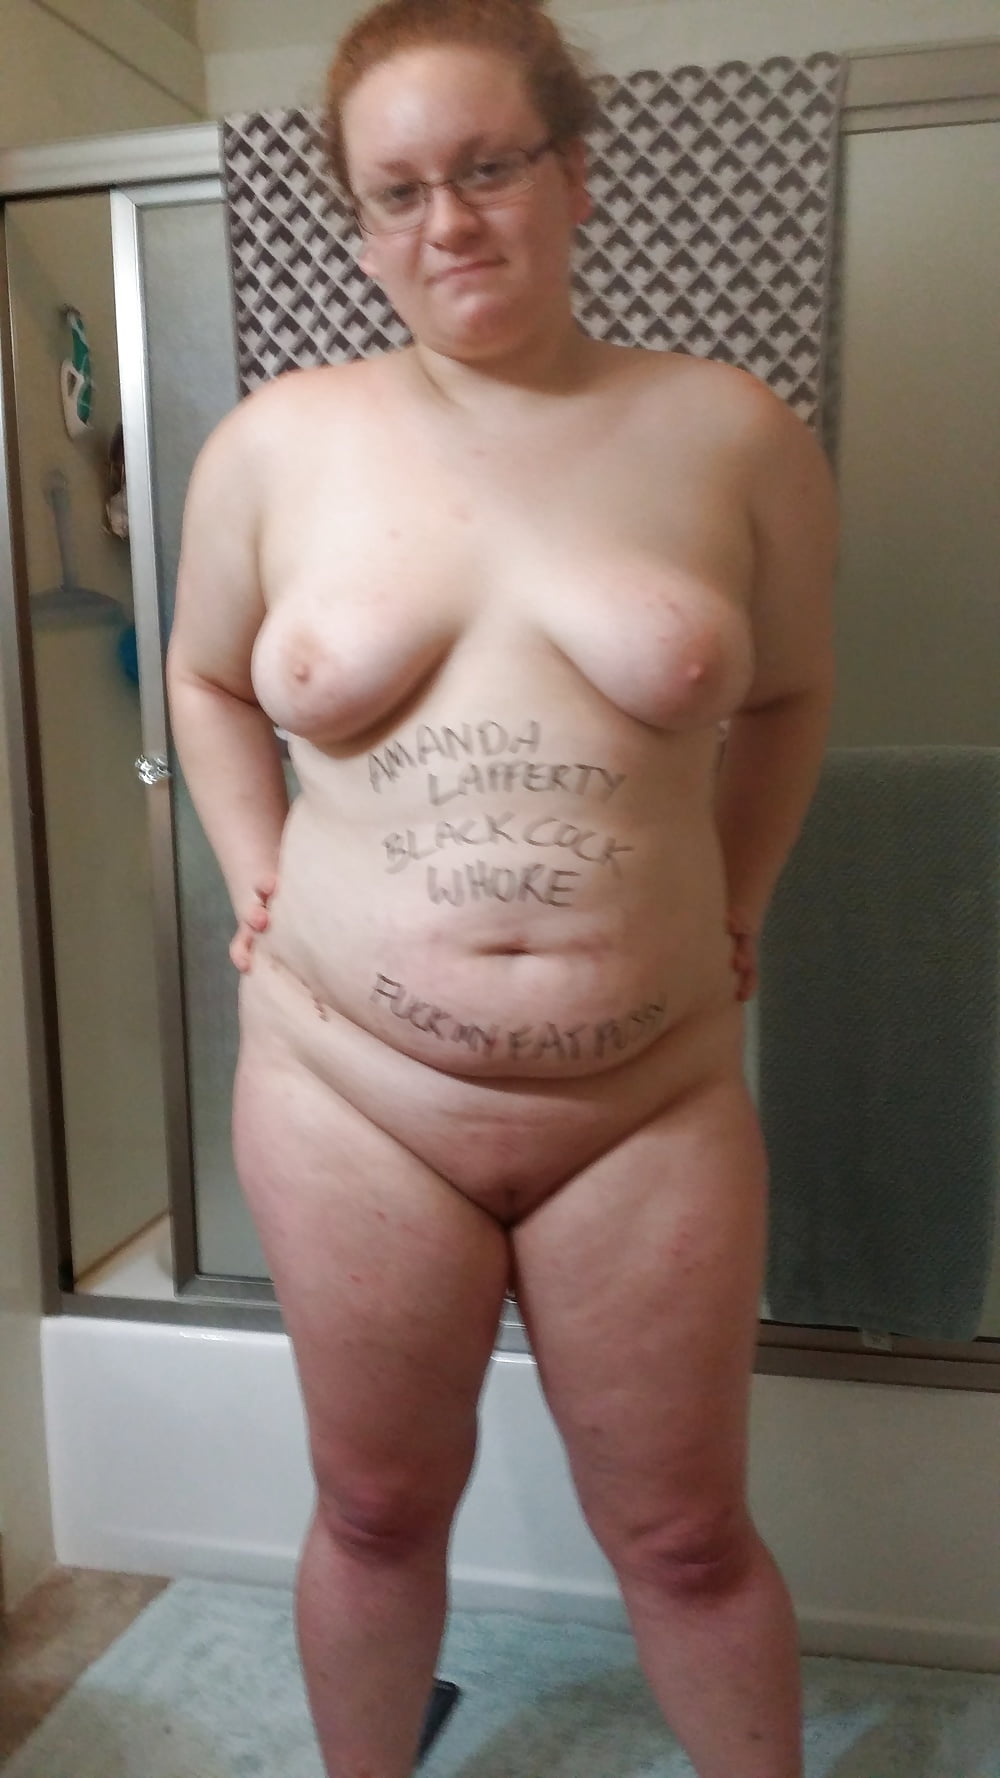 Porn Pics Fat whore Amanda Lafferty black cocktail slut